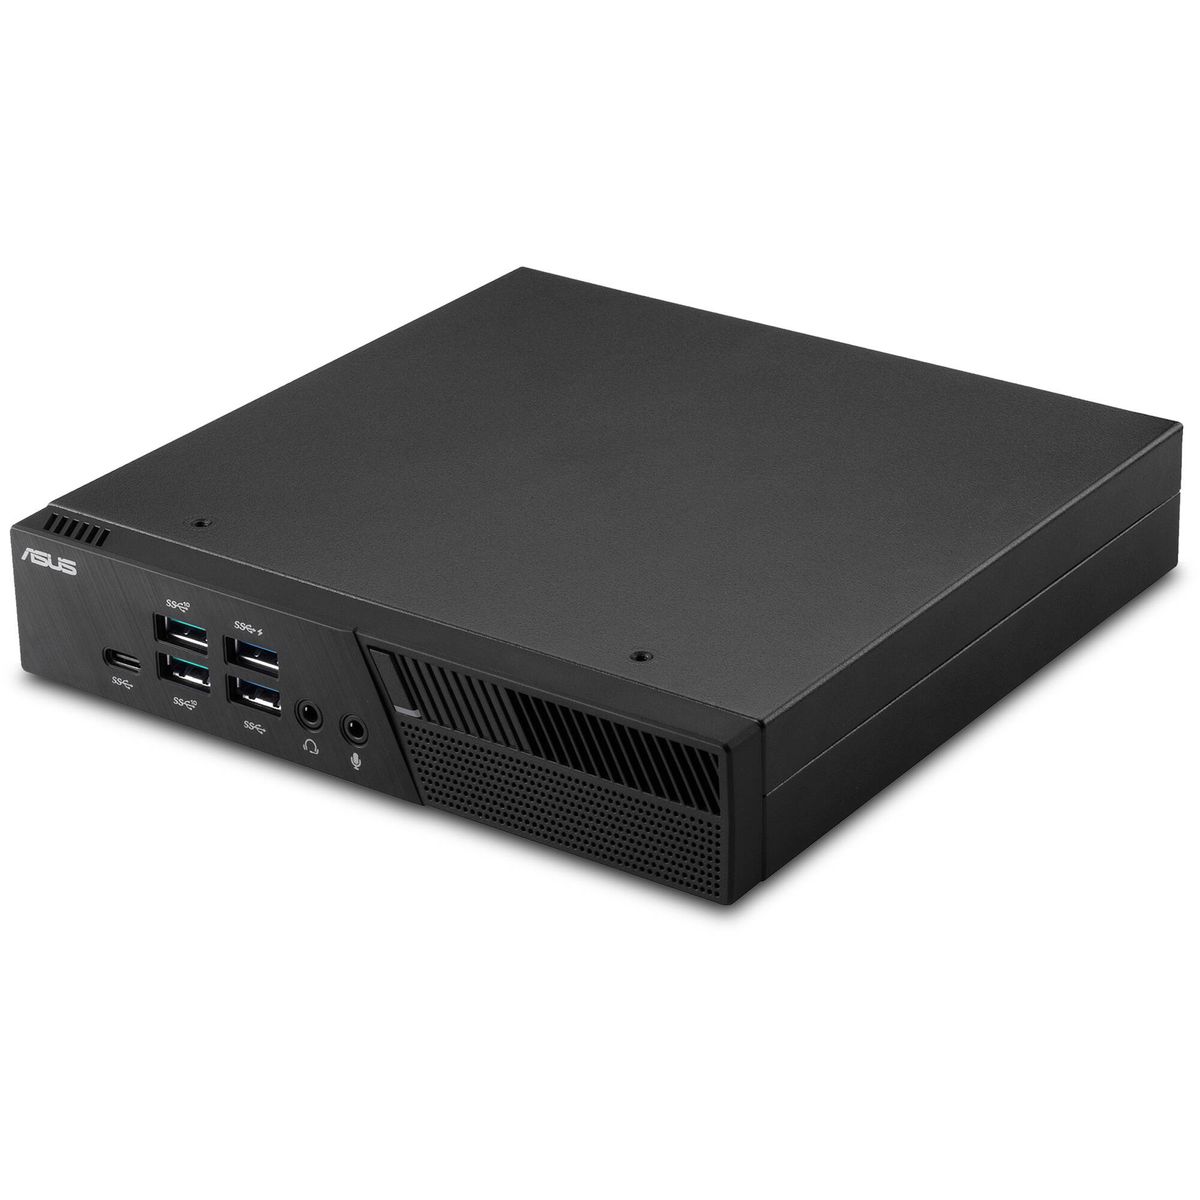 ASUS Mini PC PB60, USB 3.1, USB-Type C, SATA, m2 SSD, DDR4 S0-DIMM